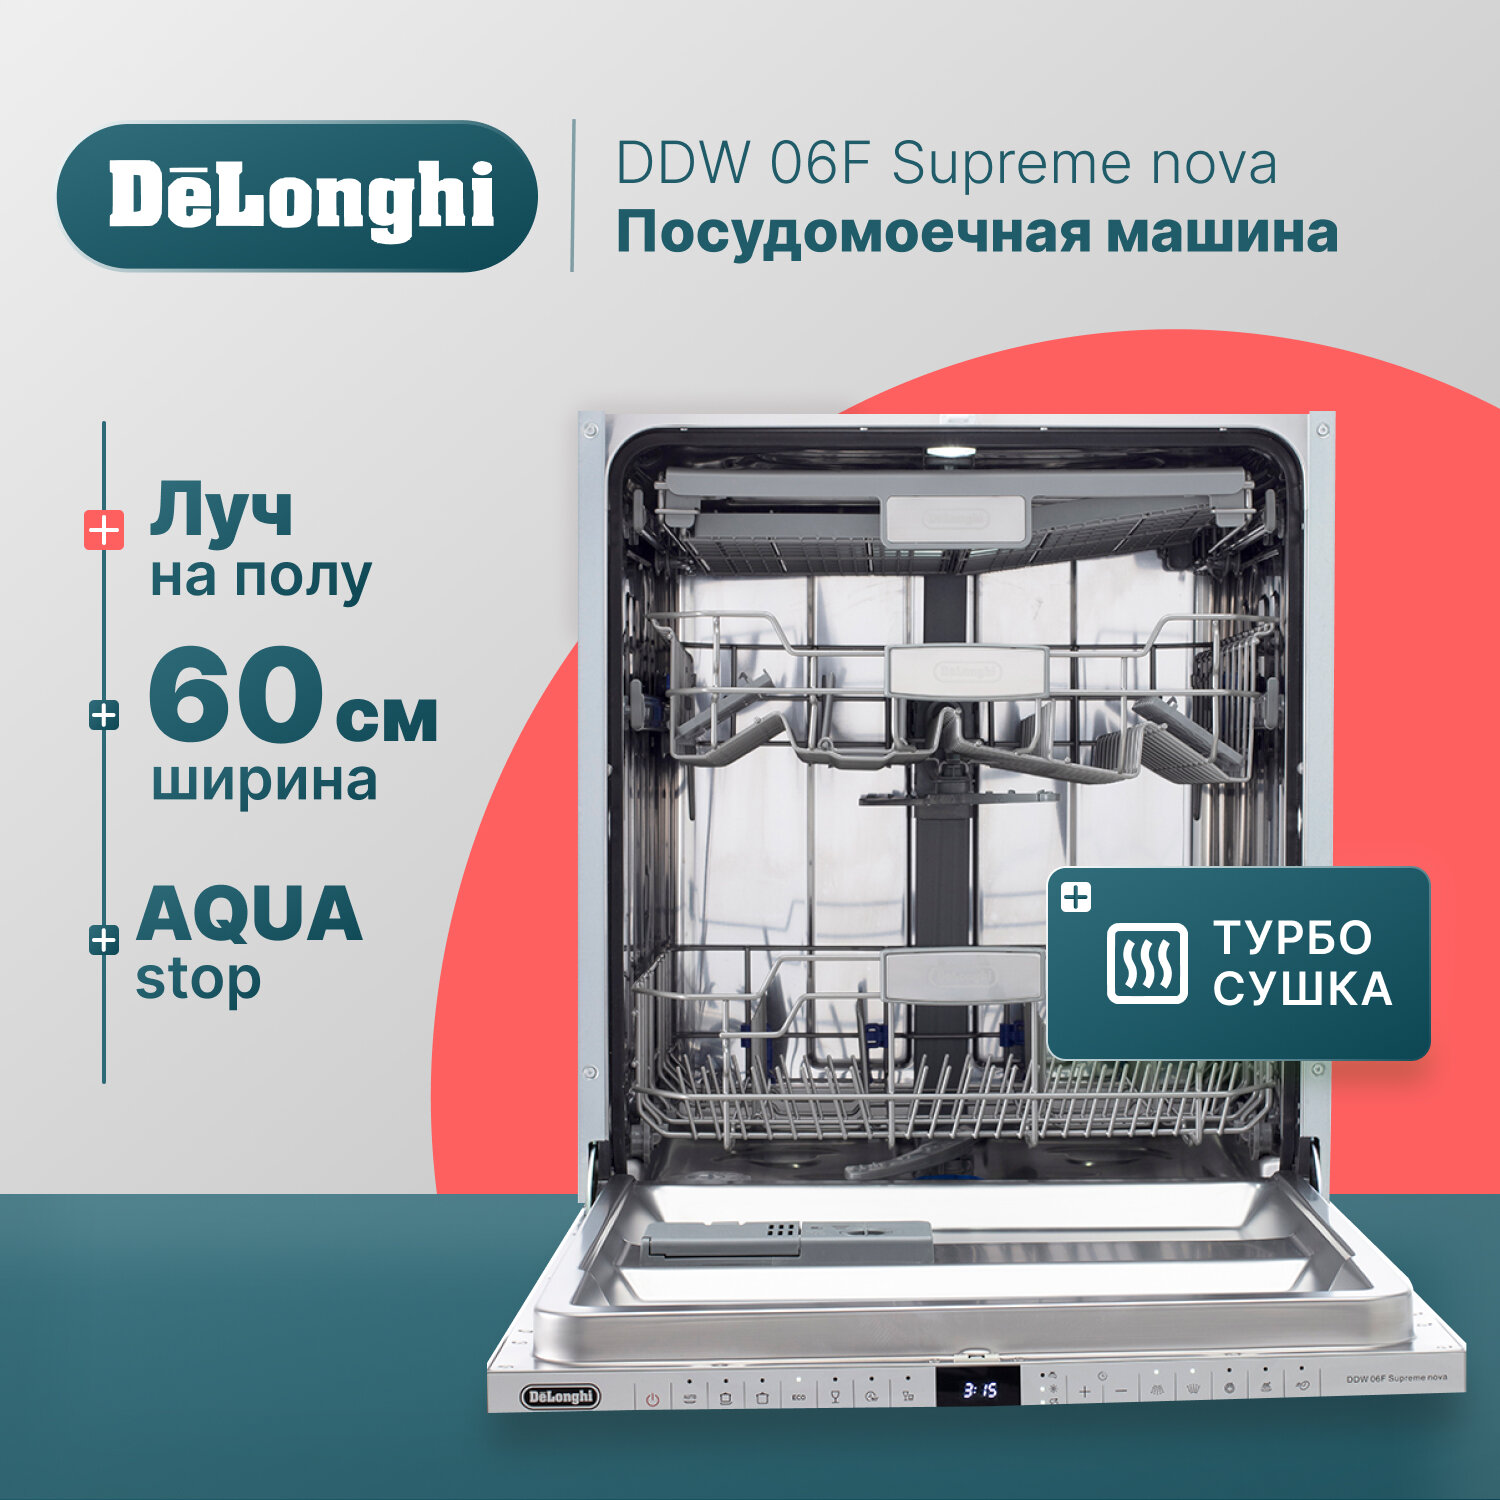 Встраиваемая посудомоечная машина DeLonghi DDW 06F Supreme Nova, 60 см, 14 комплектов, Aqua Stop, 3 корзины, луч на полу